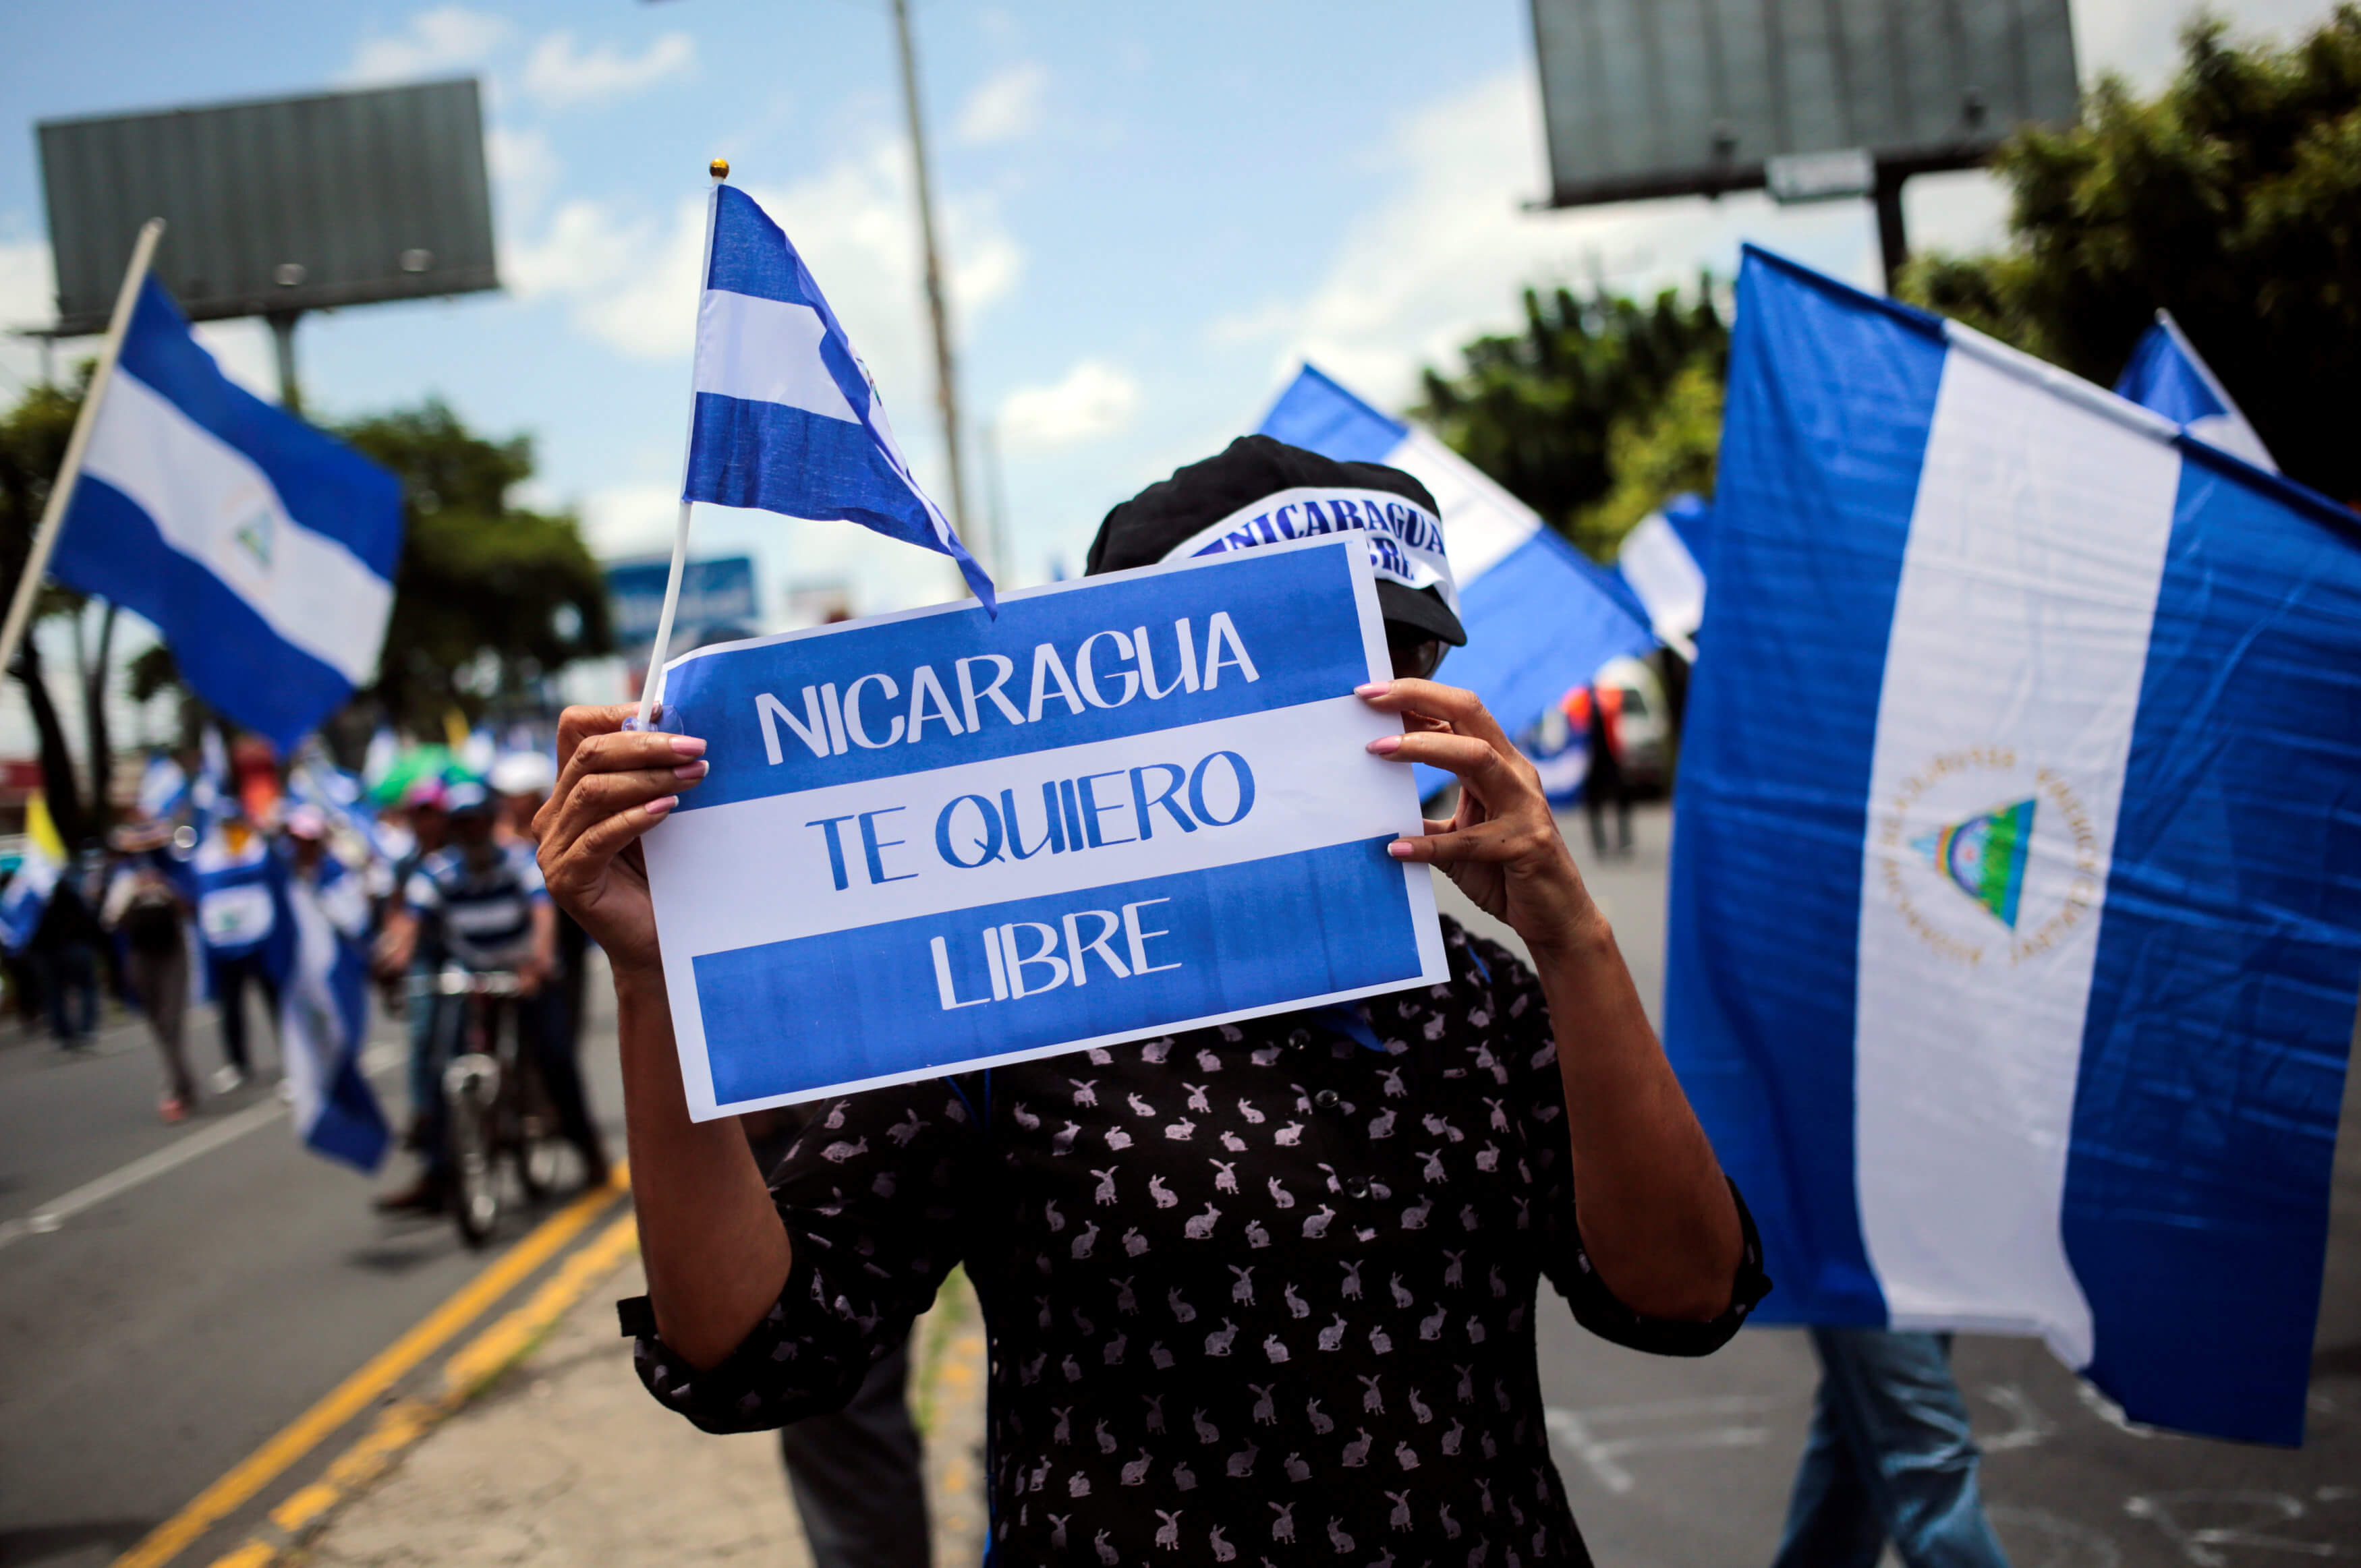 Nicaragua recorta presupuesto en salud y educación por crisis